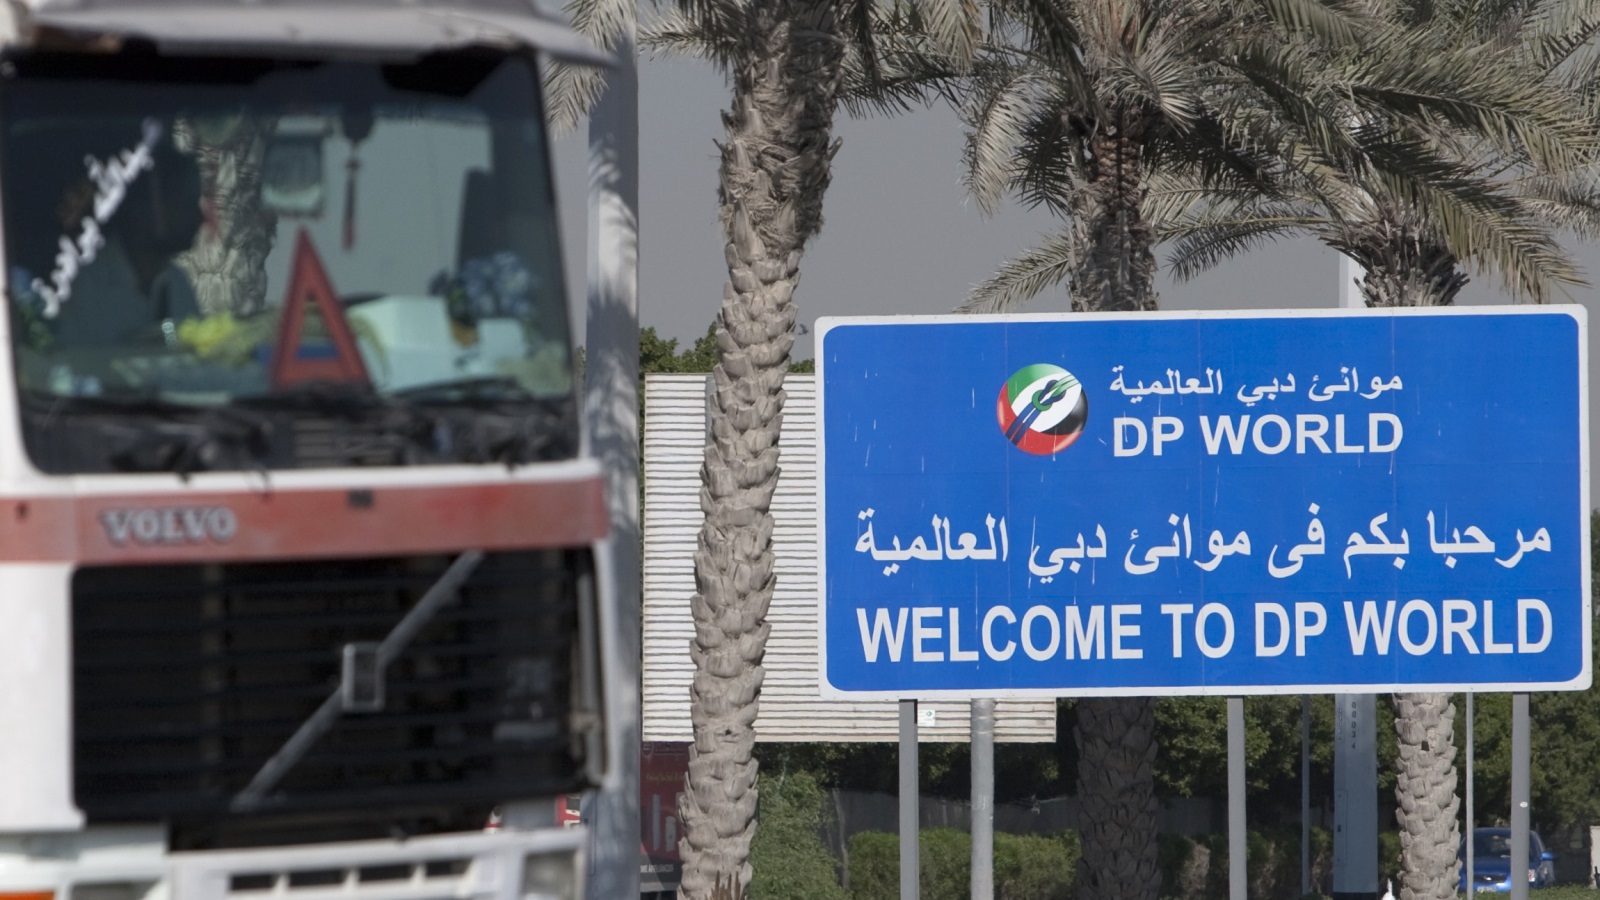 ‪حسب مراقبين، فإن شركة موانئ دبي فشلت في السيطرة على العديد من الموانئ‬ حسب مراقبين، فإن شركة موانئ دبي فشلت في السيطرة على العديد من الموانئ (رويترز)